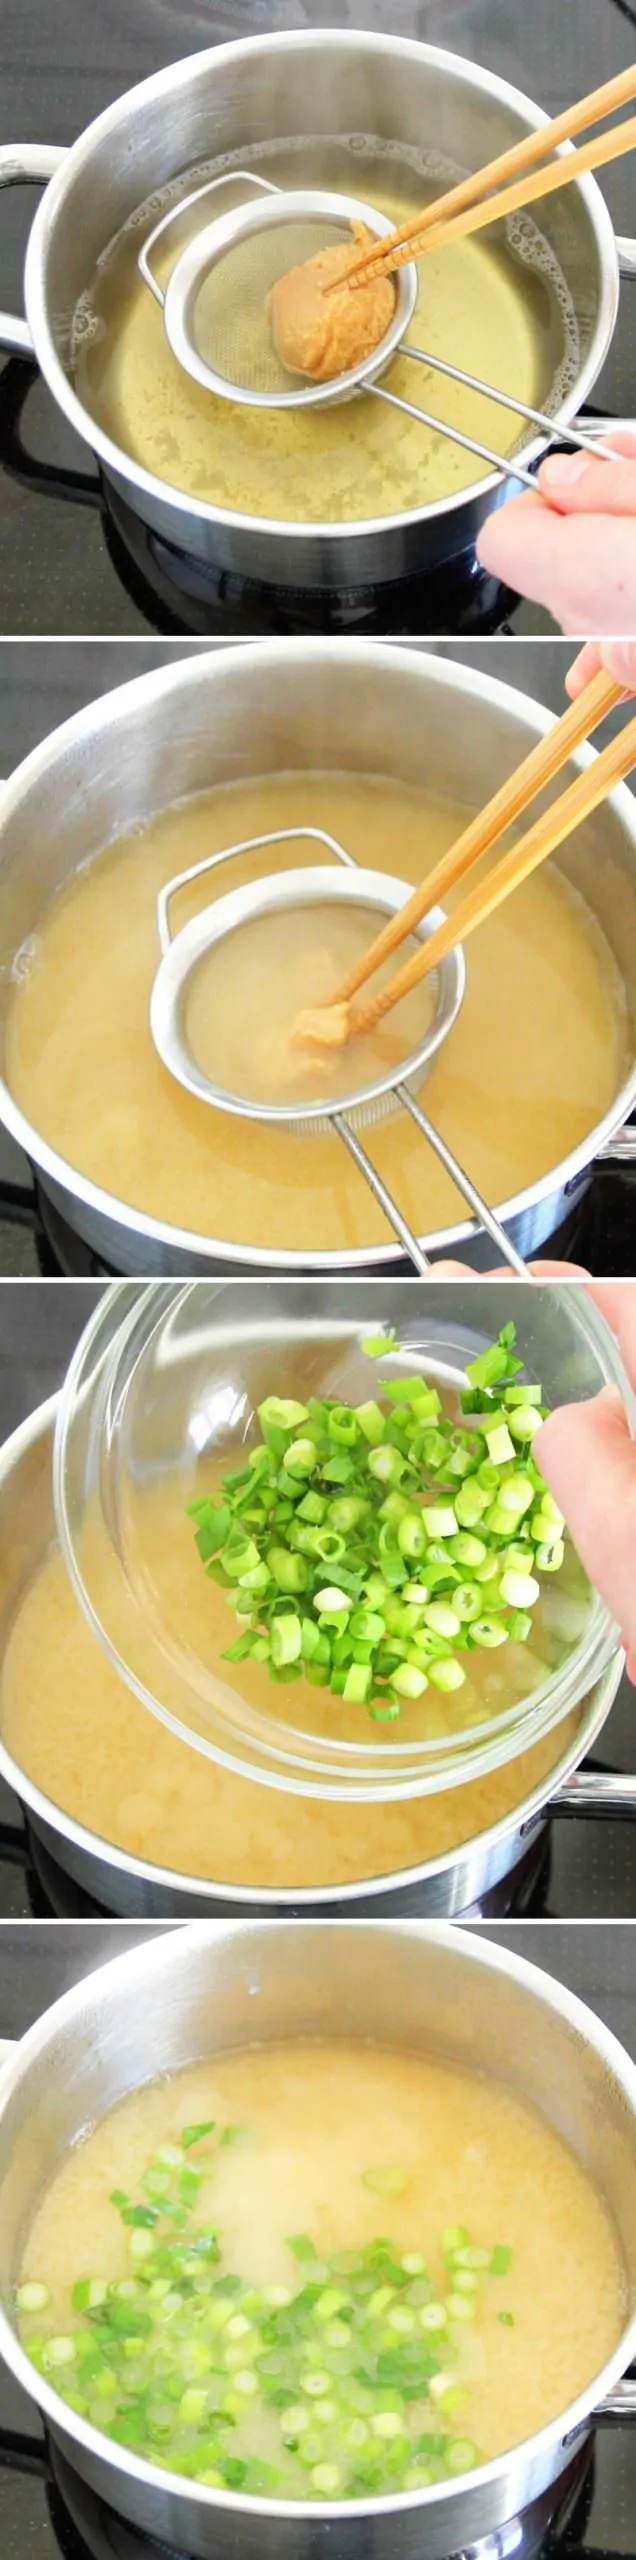 Miso-Suppe mit 3 Zutaten Schritt 5 Miso Paste einrühren